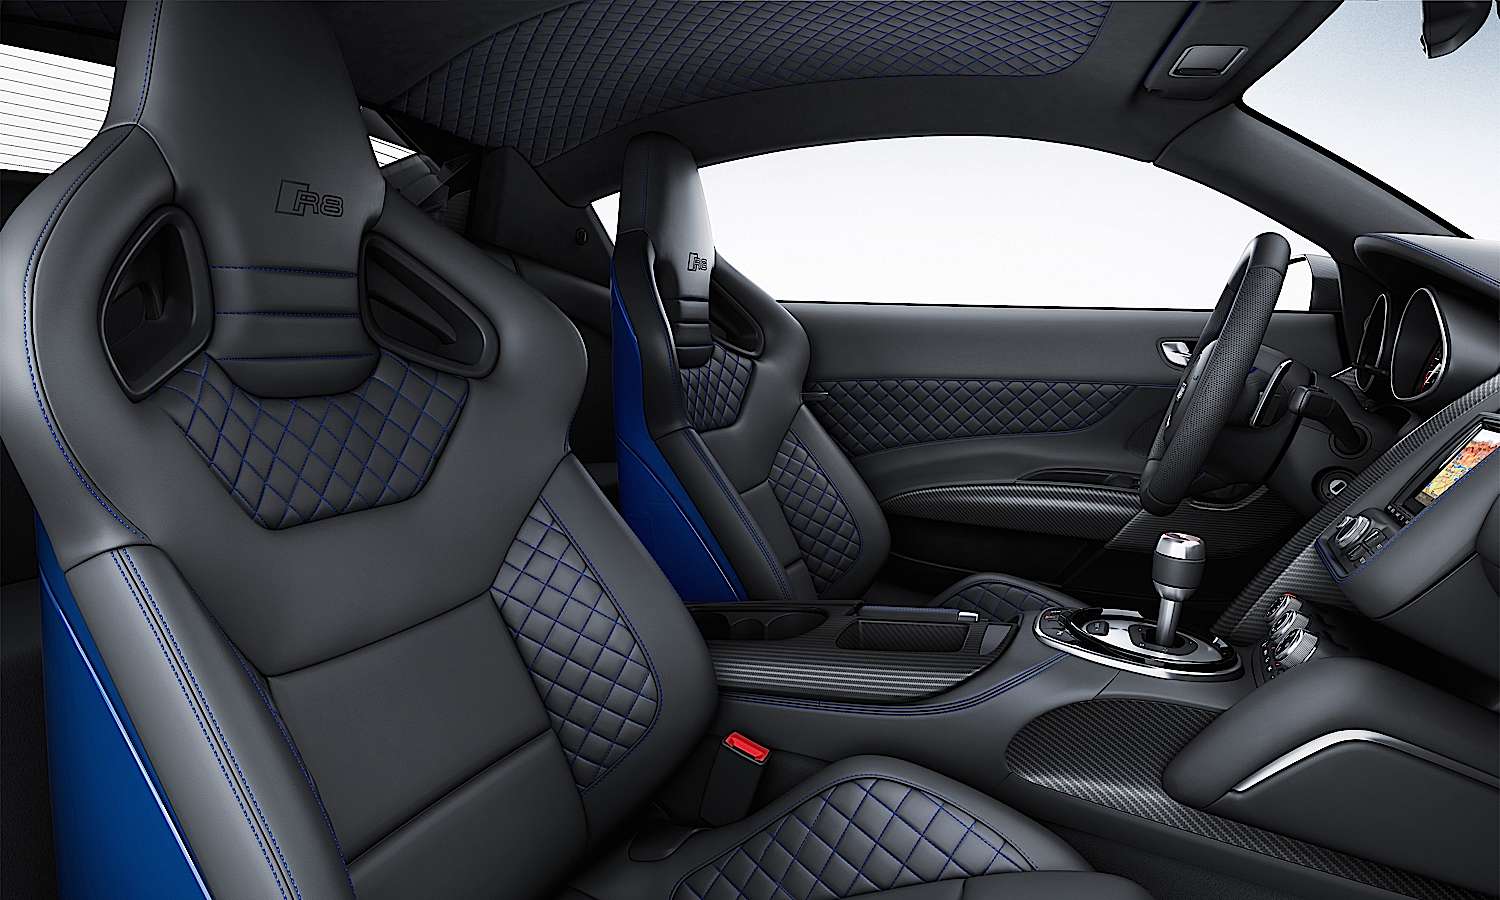 The Audi R8 LMX Seats